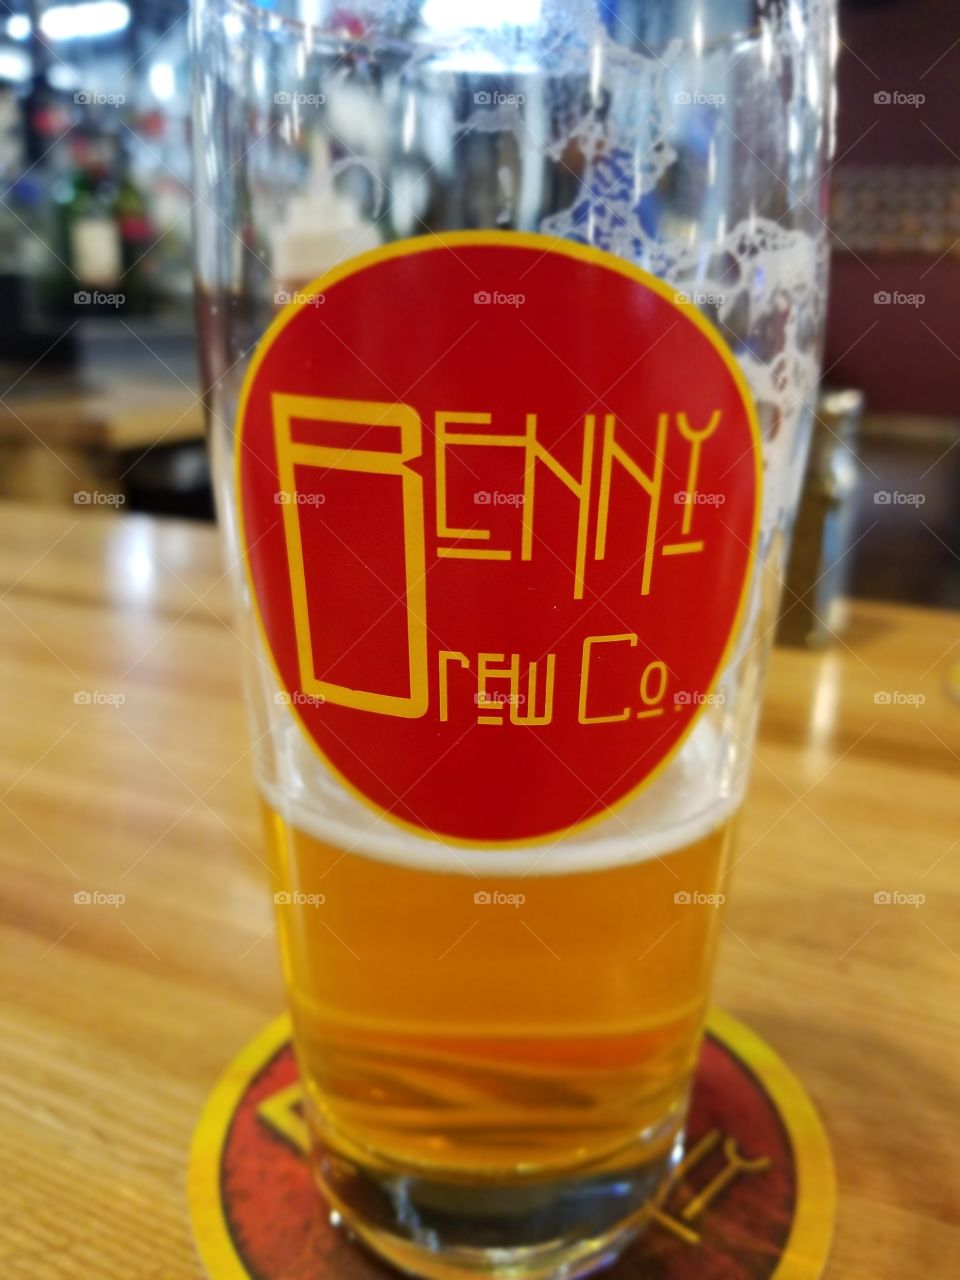 Benny Brew Co Beer